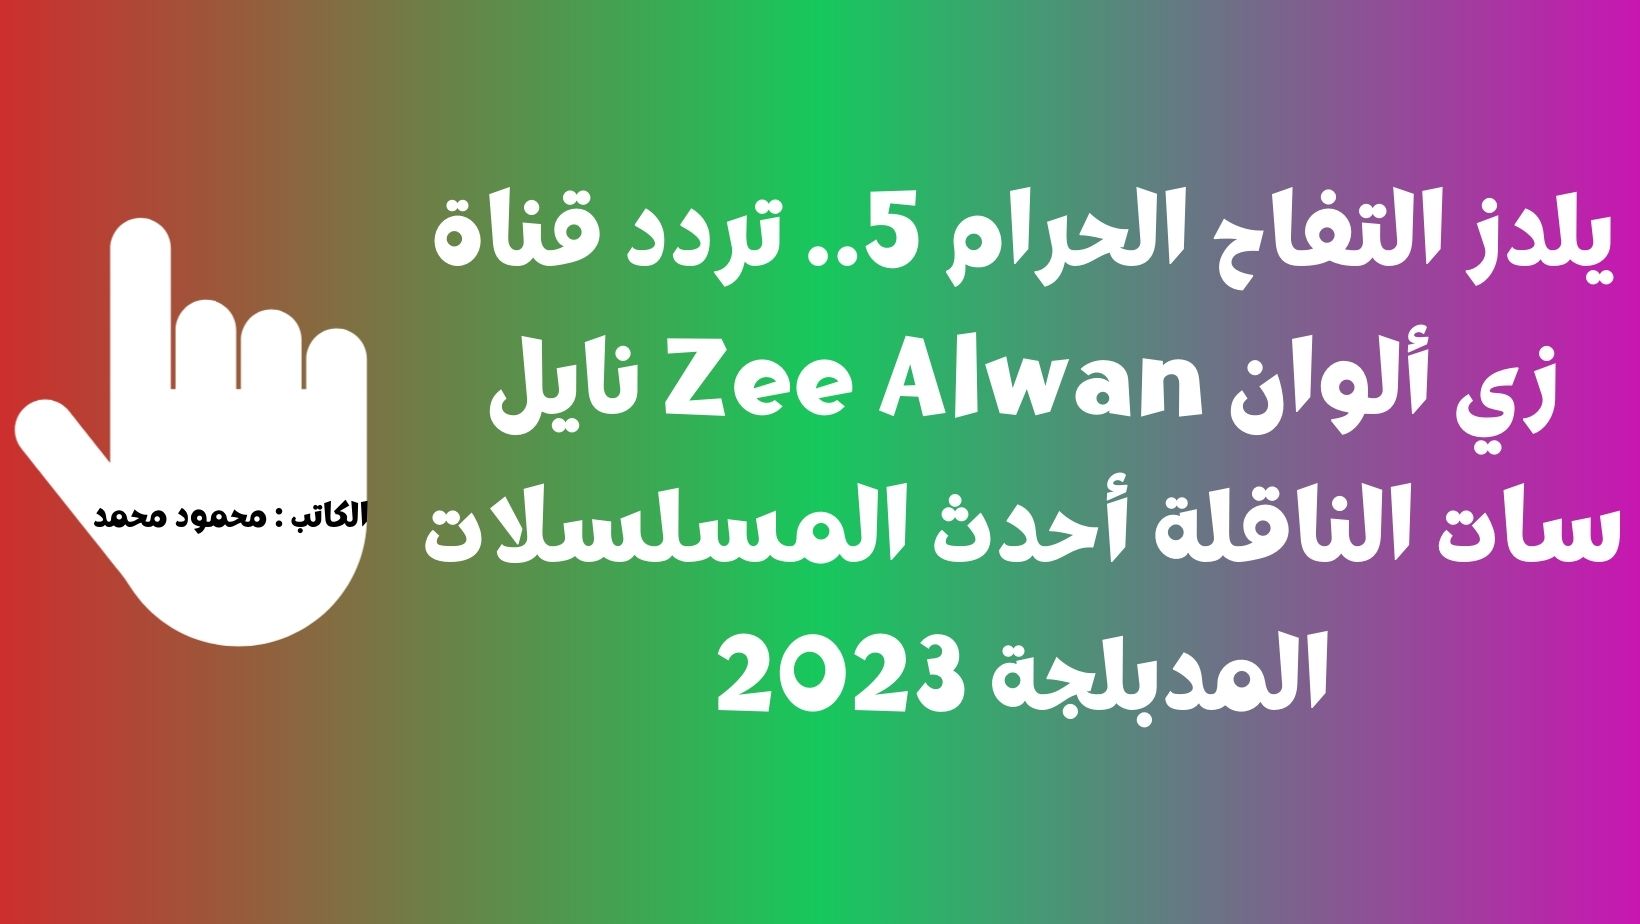 تردد قناة زي ألوان Zee Alwan